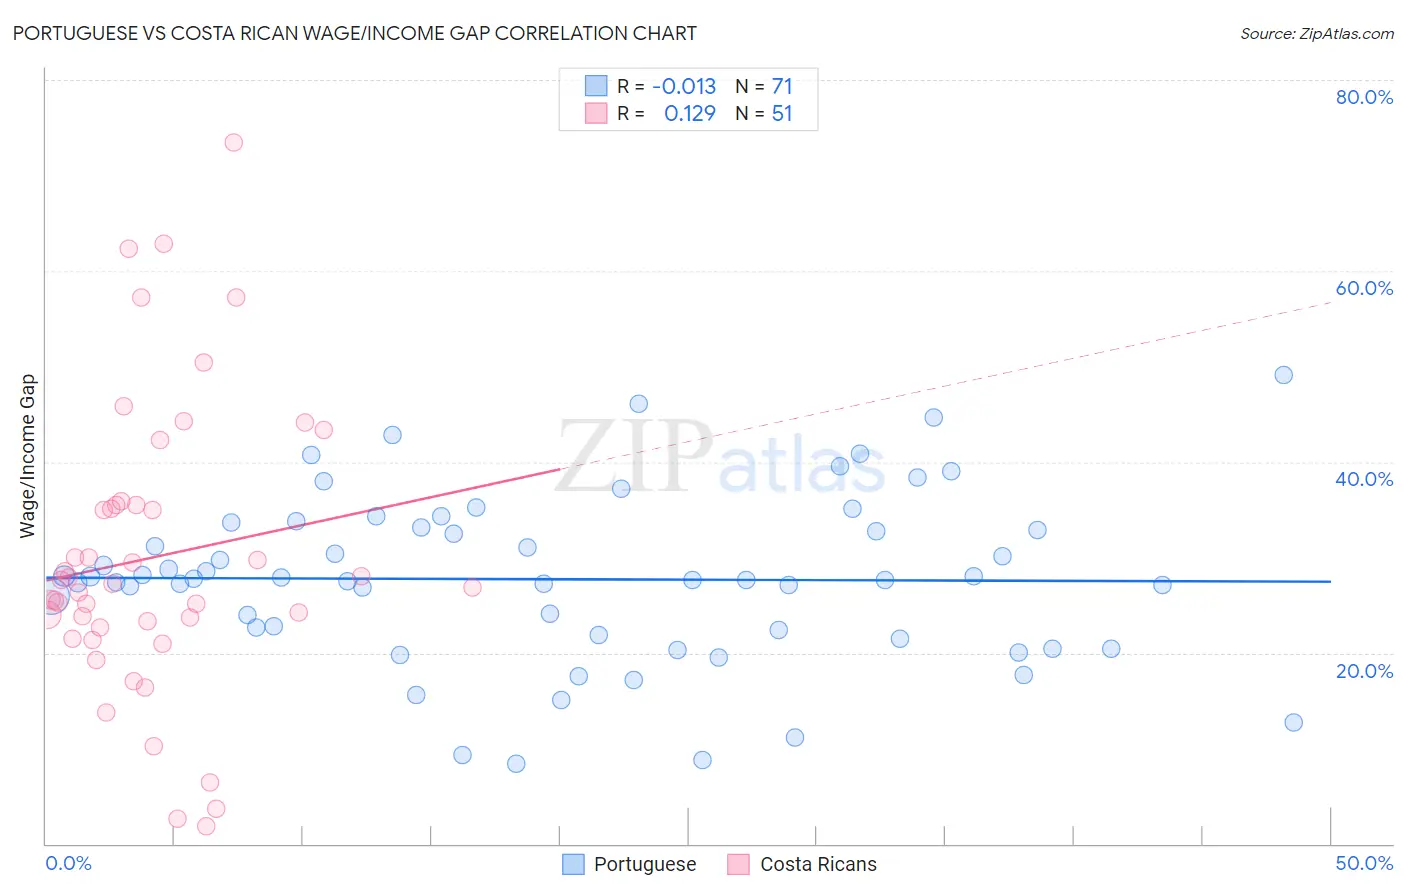 Portuguese vs Costa Rican Wage/Income Gap